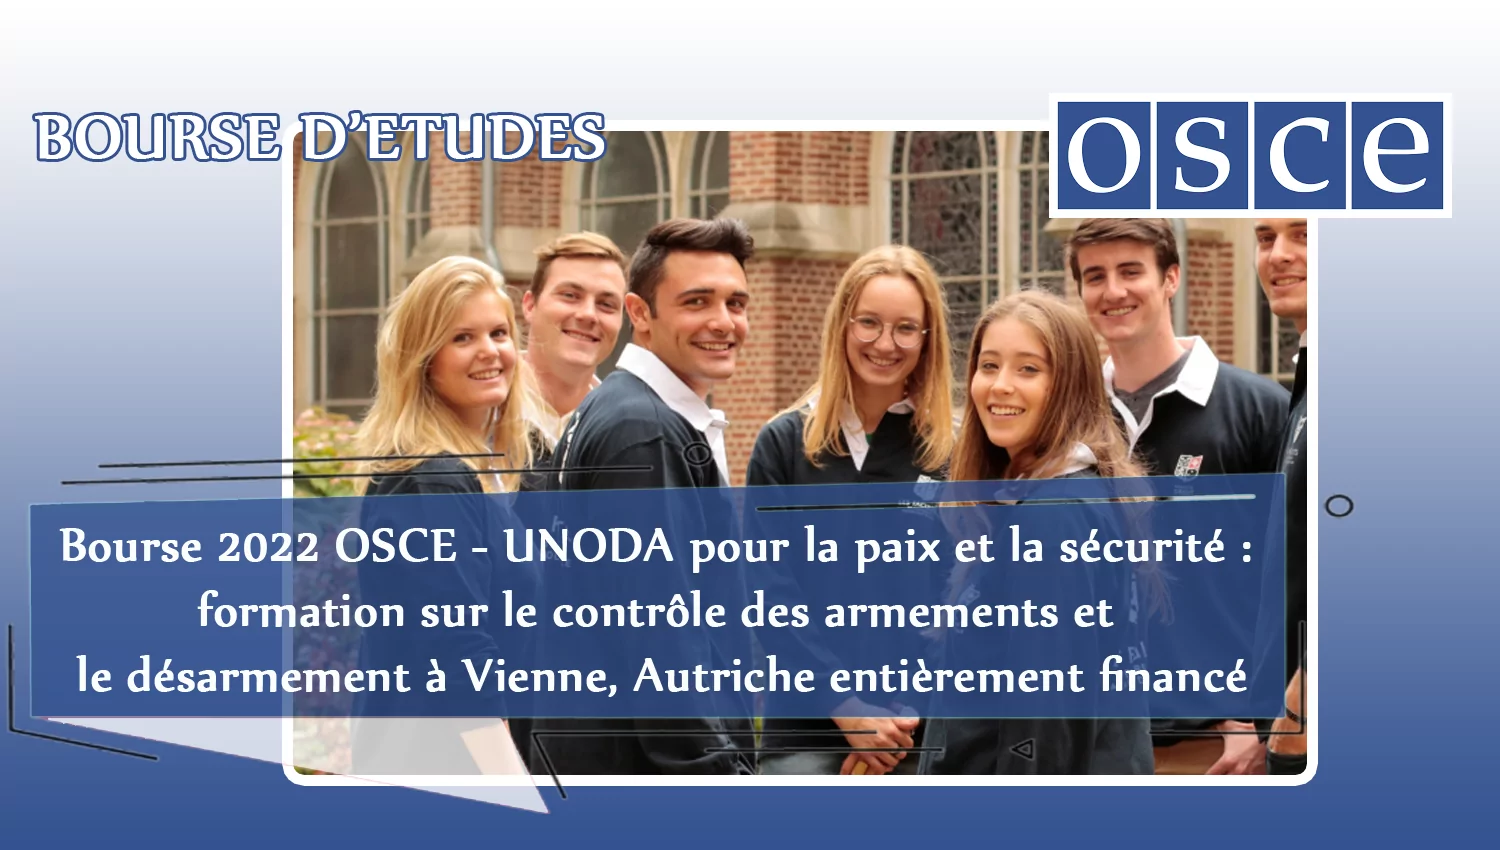 Bourse 2022 OSCE – UNODA pour la paix et la sécurité : formation sur le contrôle des armements et le désarmement à Vienne, Autriche entièrement financé